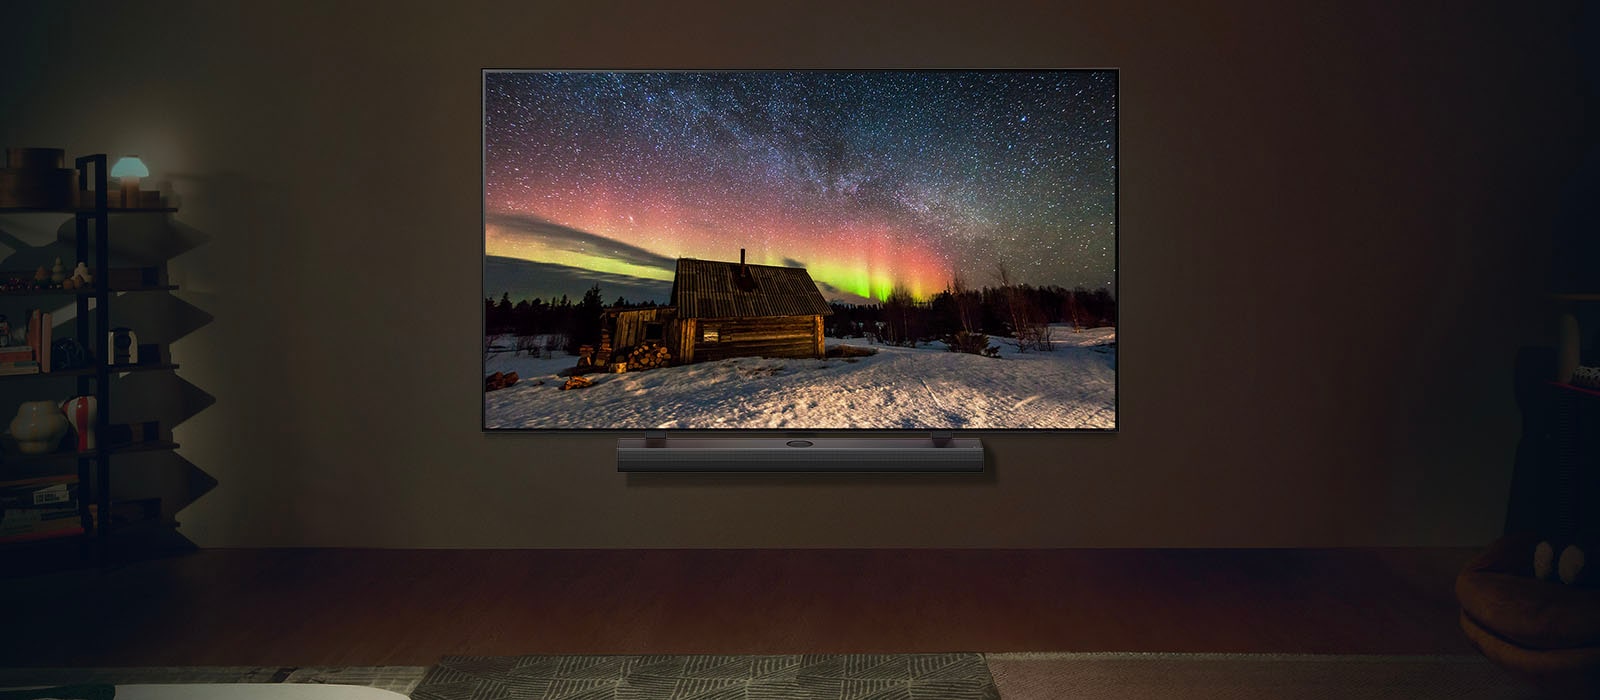 LG OLED TV a LG Soundbar v modernom obytnom priestore v noci. Na obrazovke sa zobrazuje polárna žiara s ideálnou úrovňou jasu.